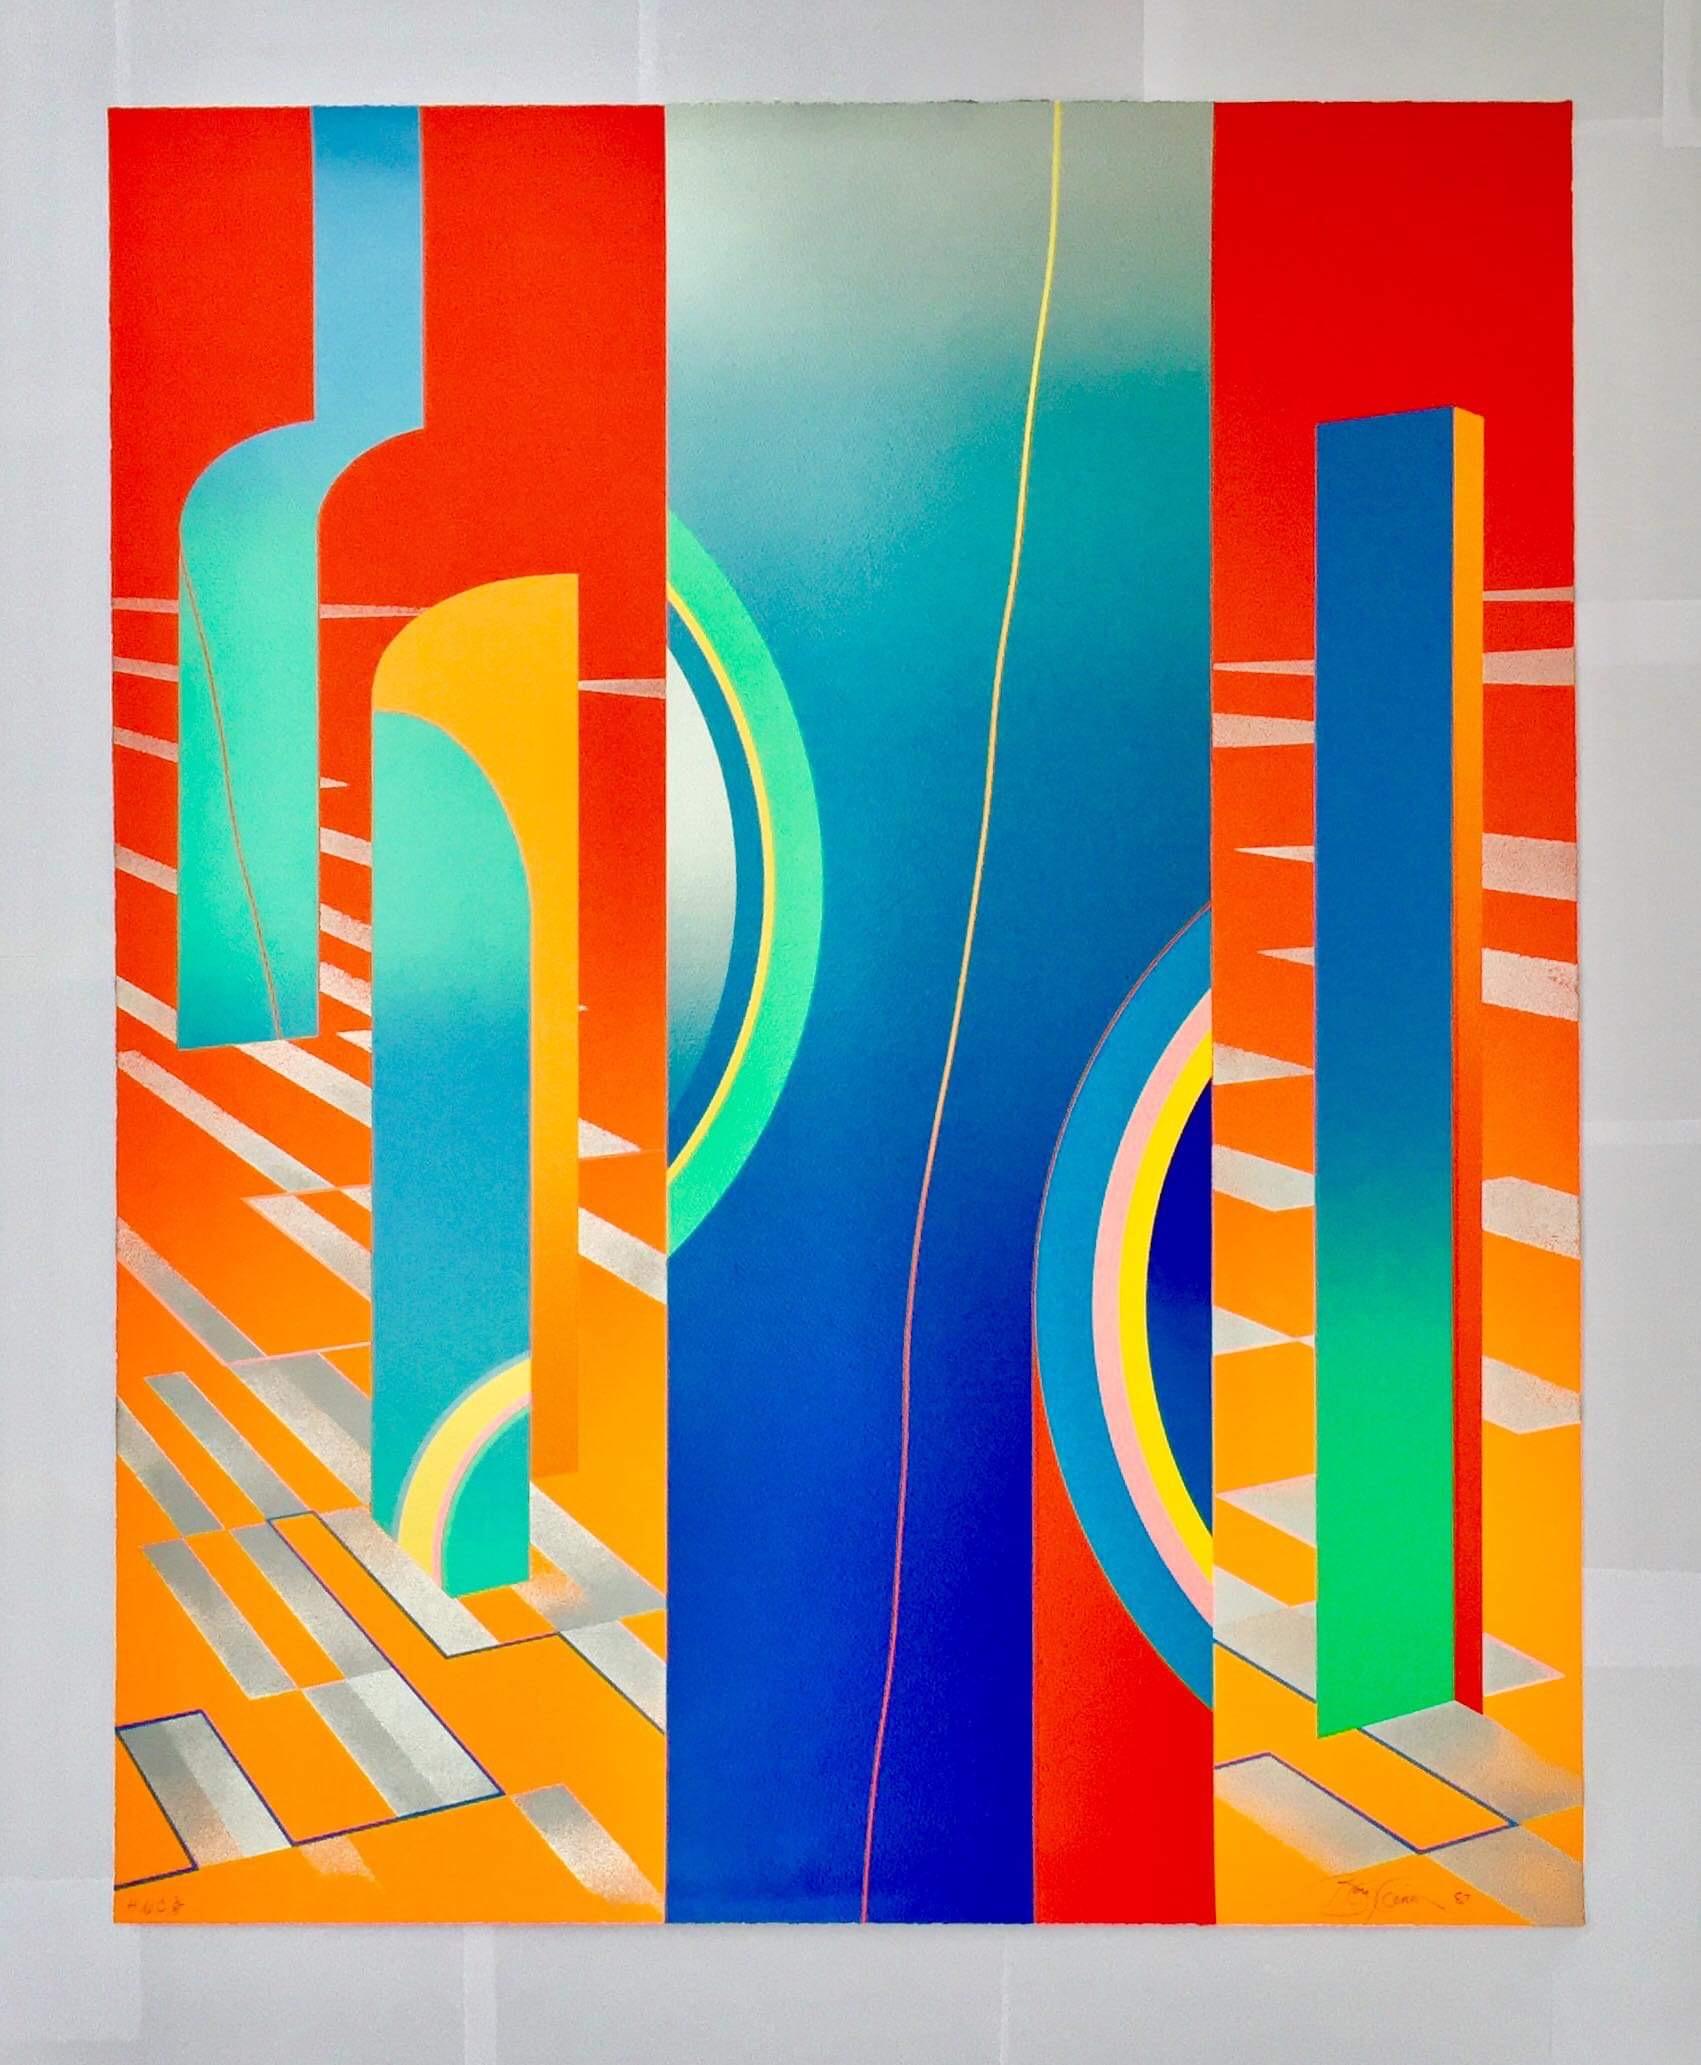 Collectors Édition limitée des années 1980 - Édition graphique géométrique abstraite et colorée 1 - Print de Anthony Benjamin